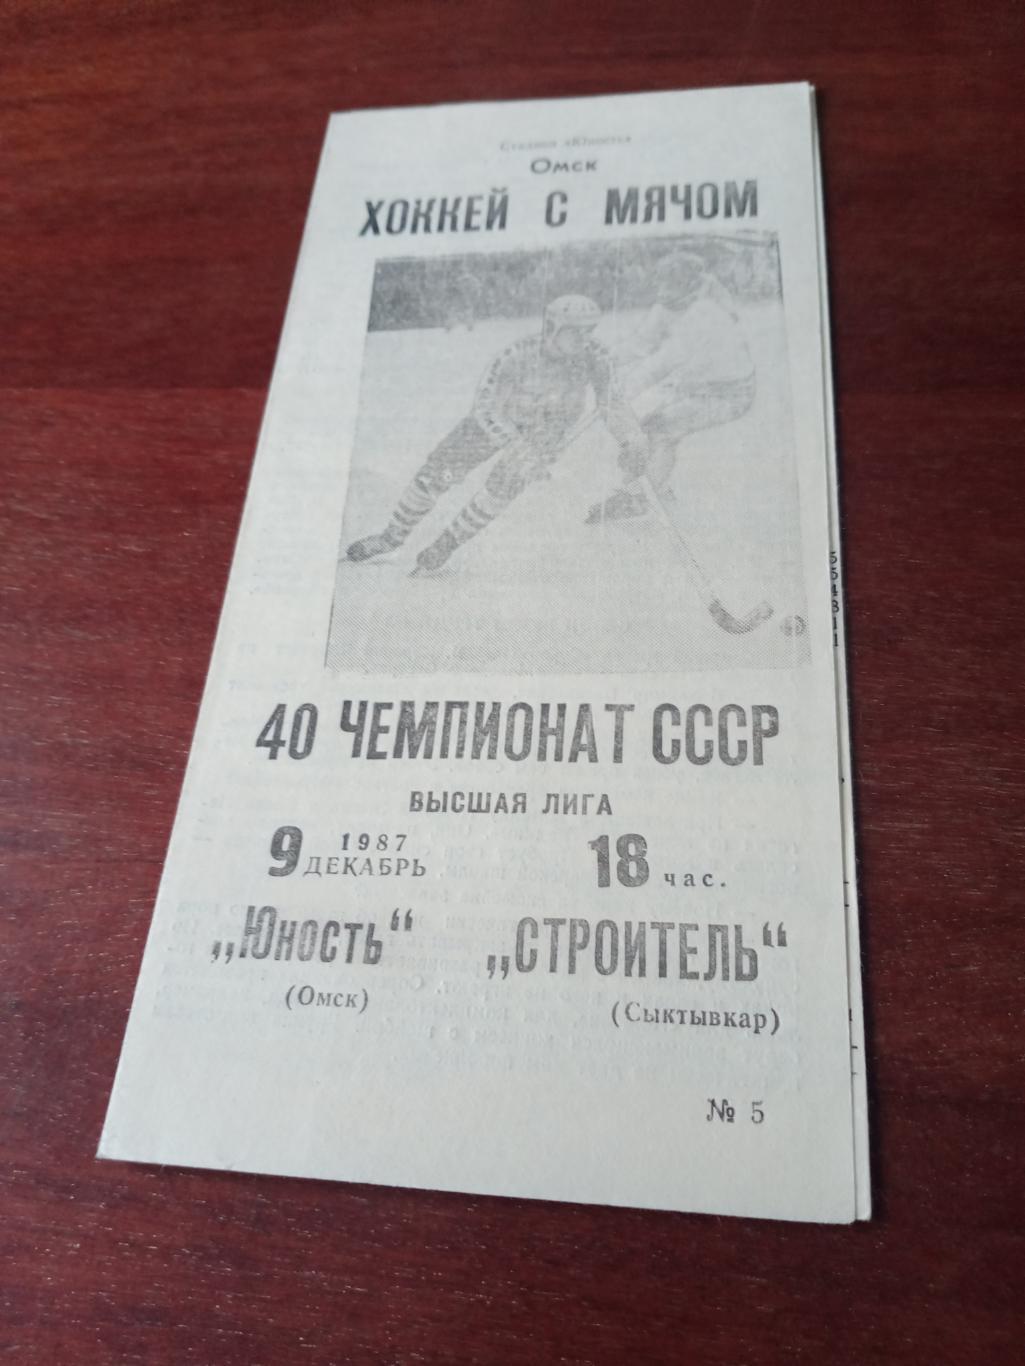 Юность Омск - Строитель Сыктывкар. 9 декабря 1987 год